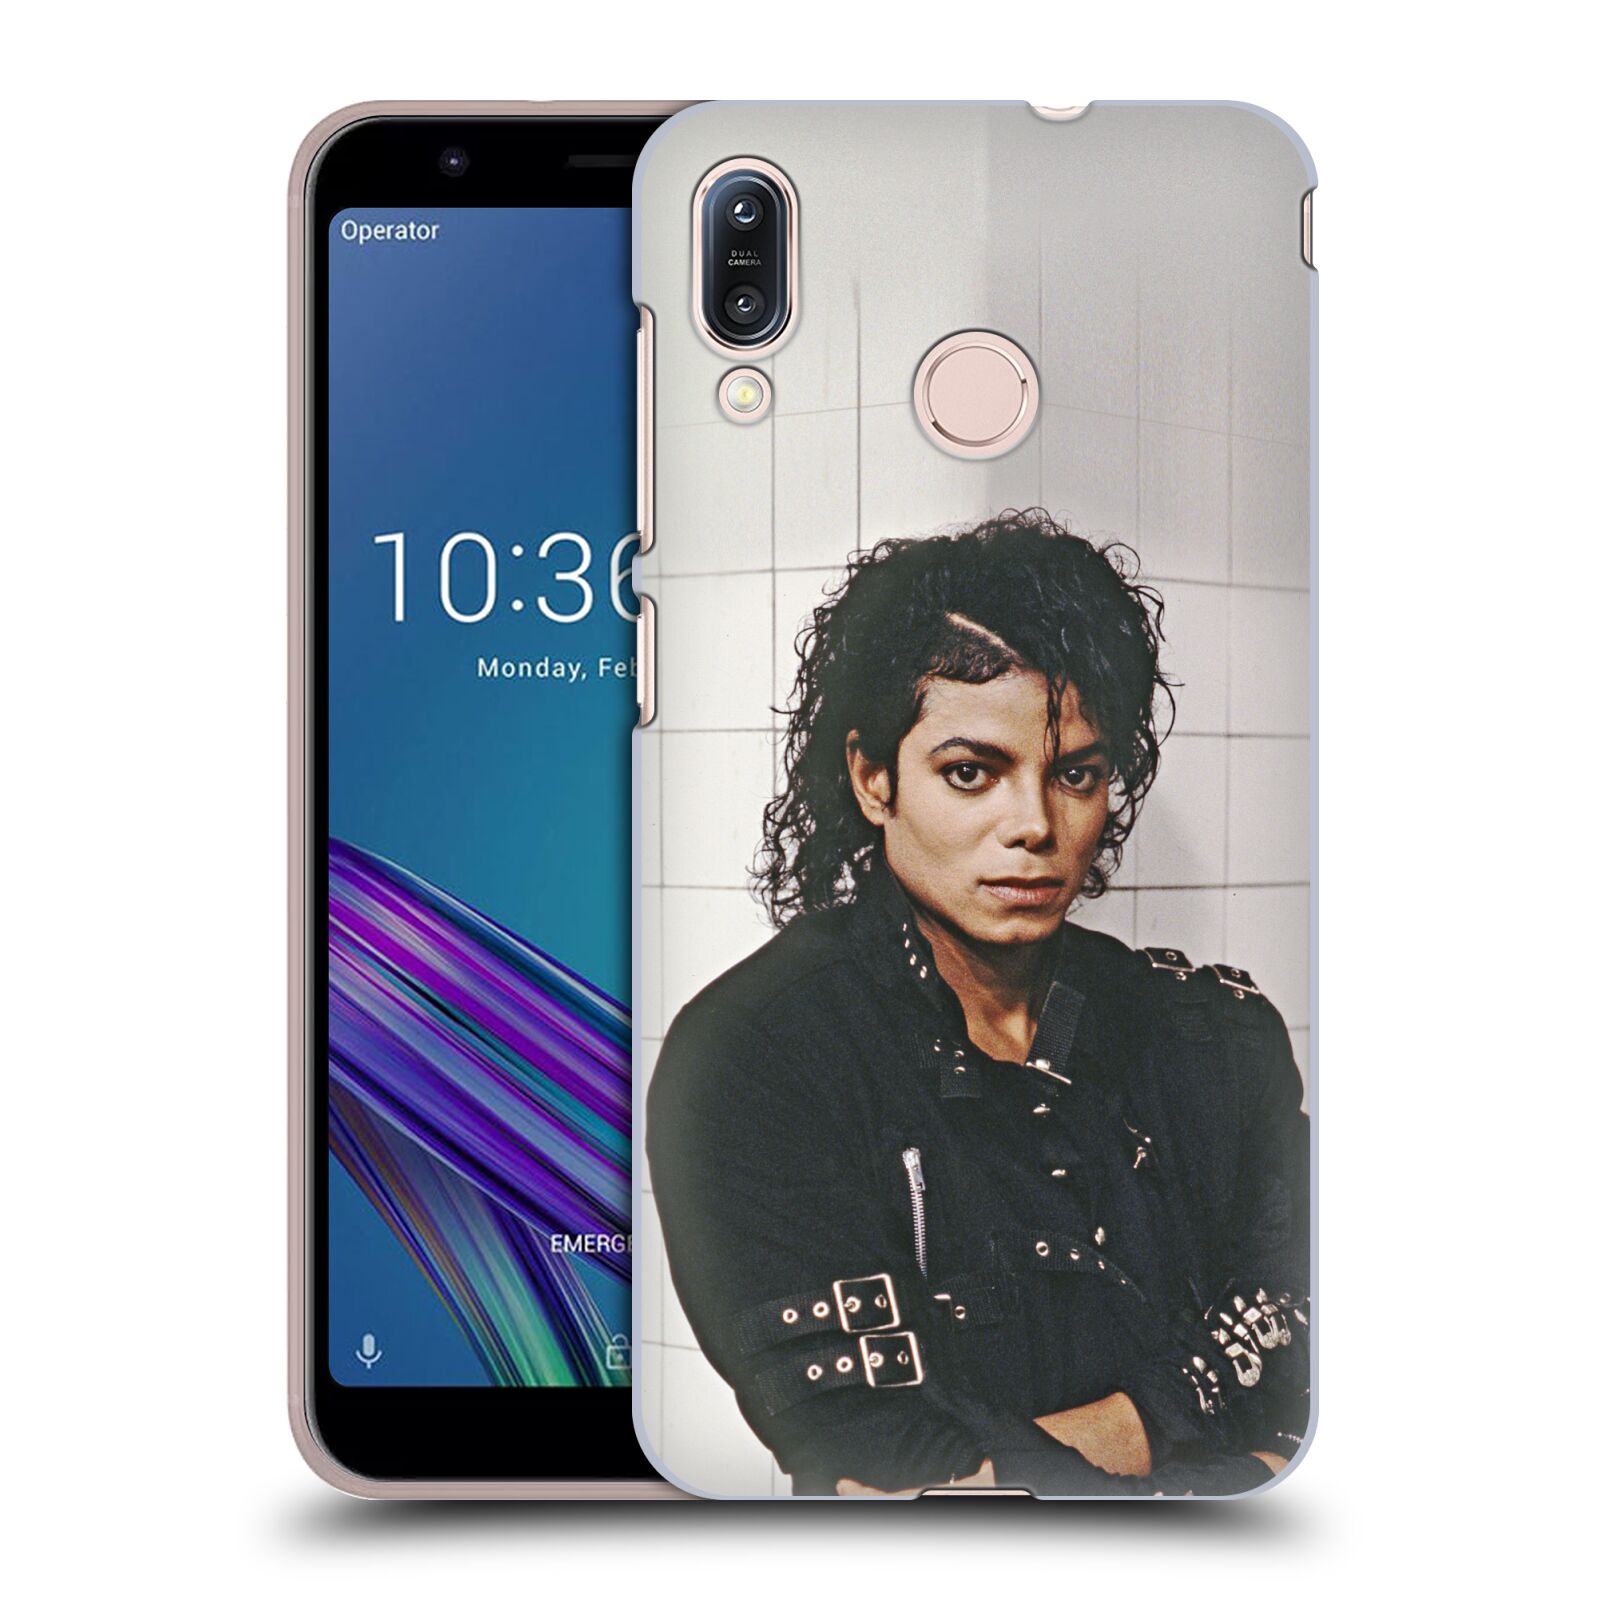 Zadní obal pro mobil Asus Zenfone Max (M1) ZB555KL - HEAD CASE - Zpěvák Michael Jackson - pohled